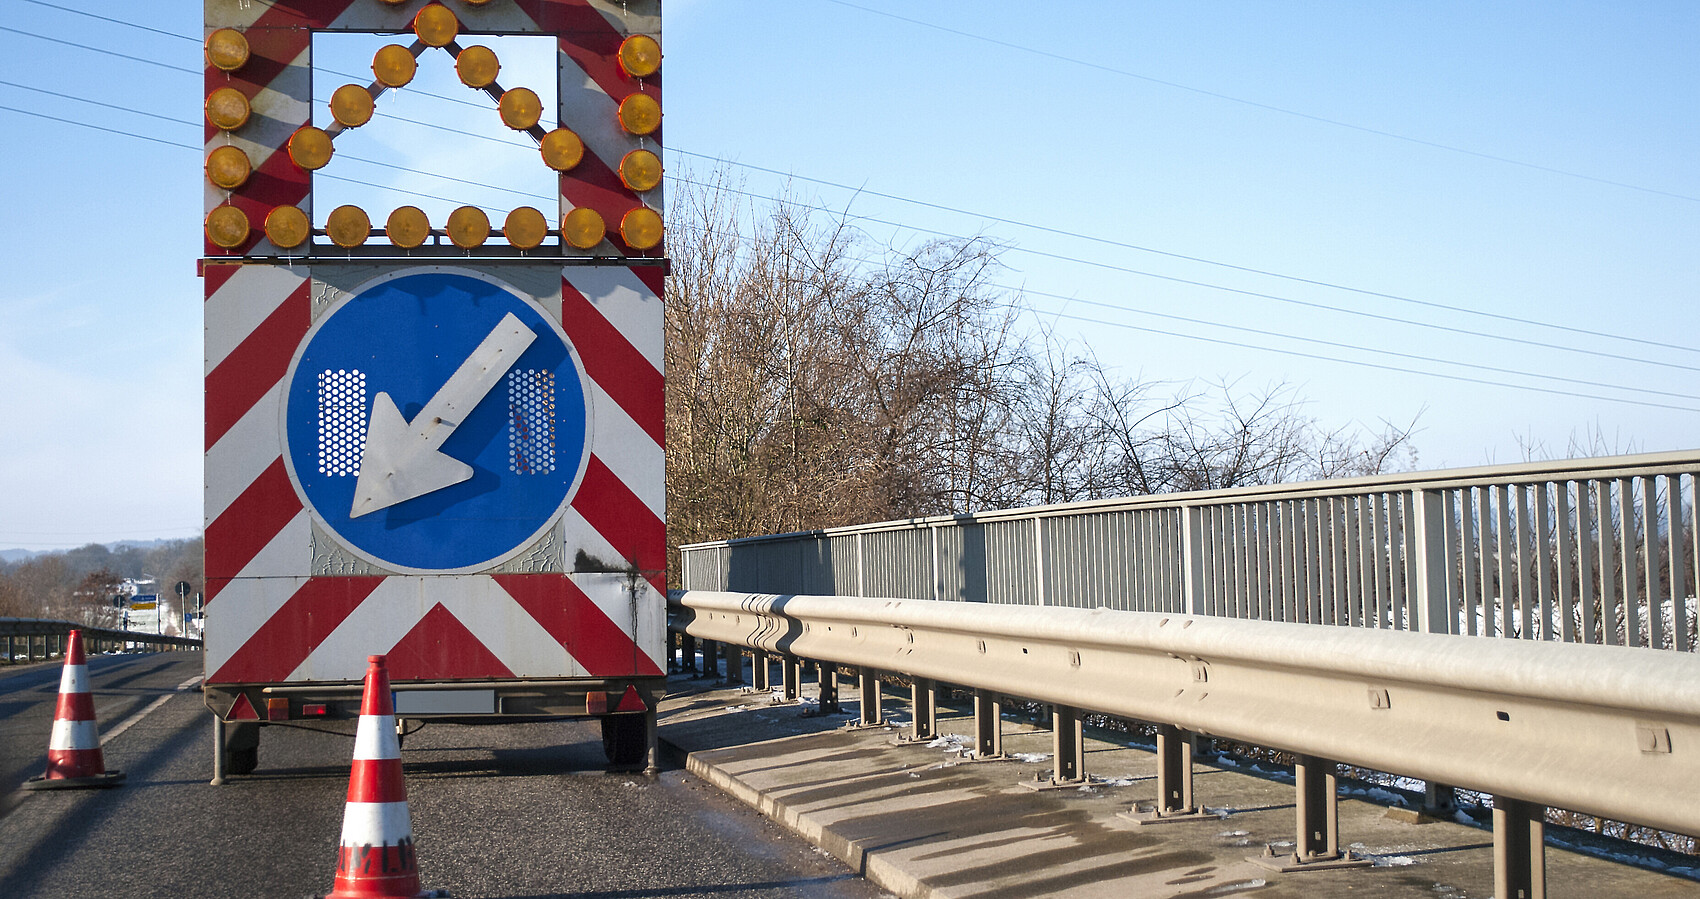 Baustelle auf einer Brücke mit Baustellenfahrzeug und Warnschild, Fahrbahnverengung